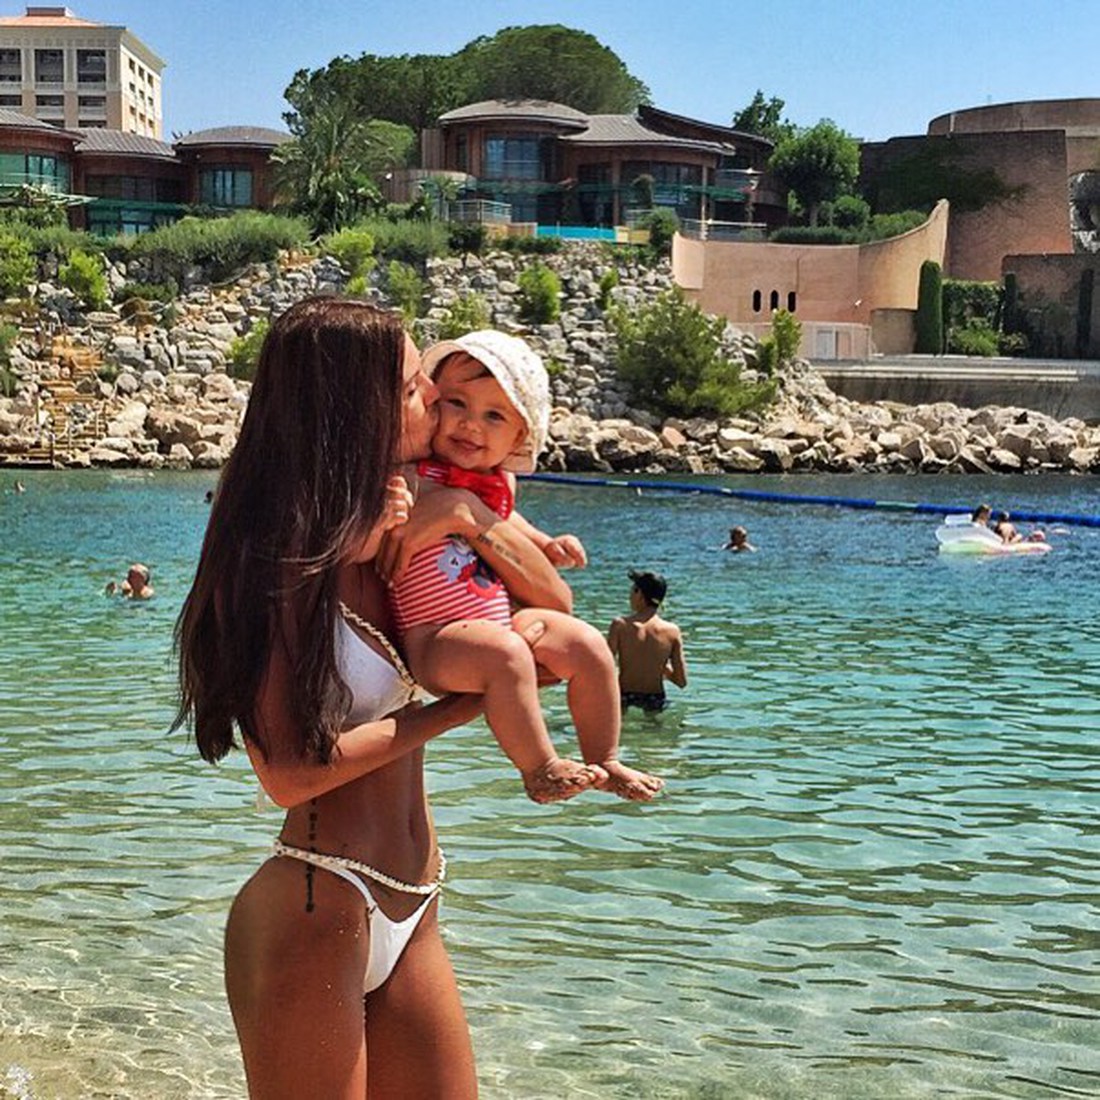 Джиган и Оксана Самойлова с дочерьми ни в чем себе не отказывают в Монако